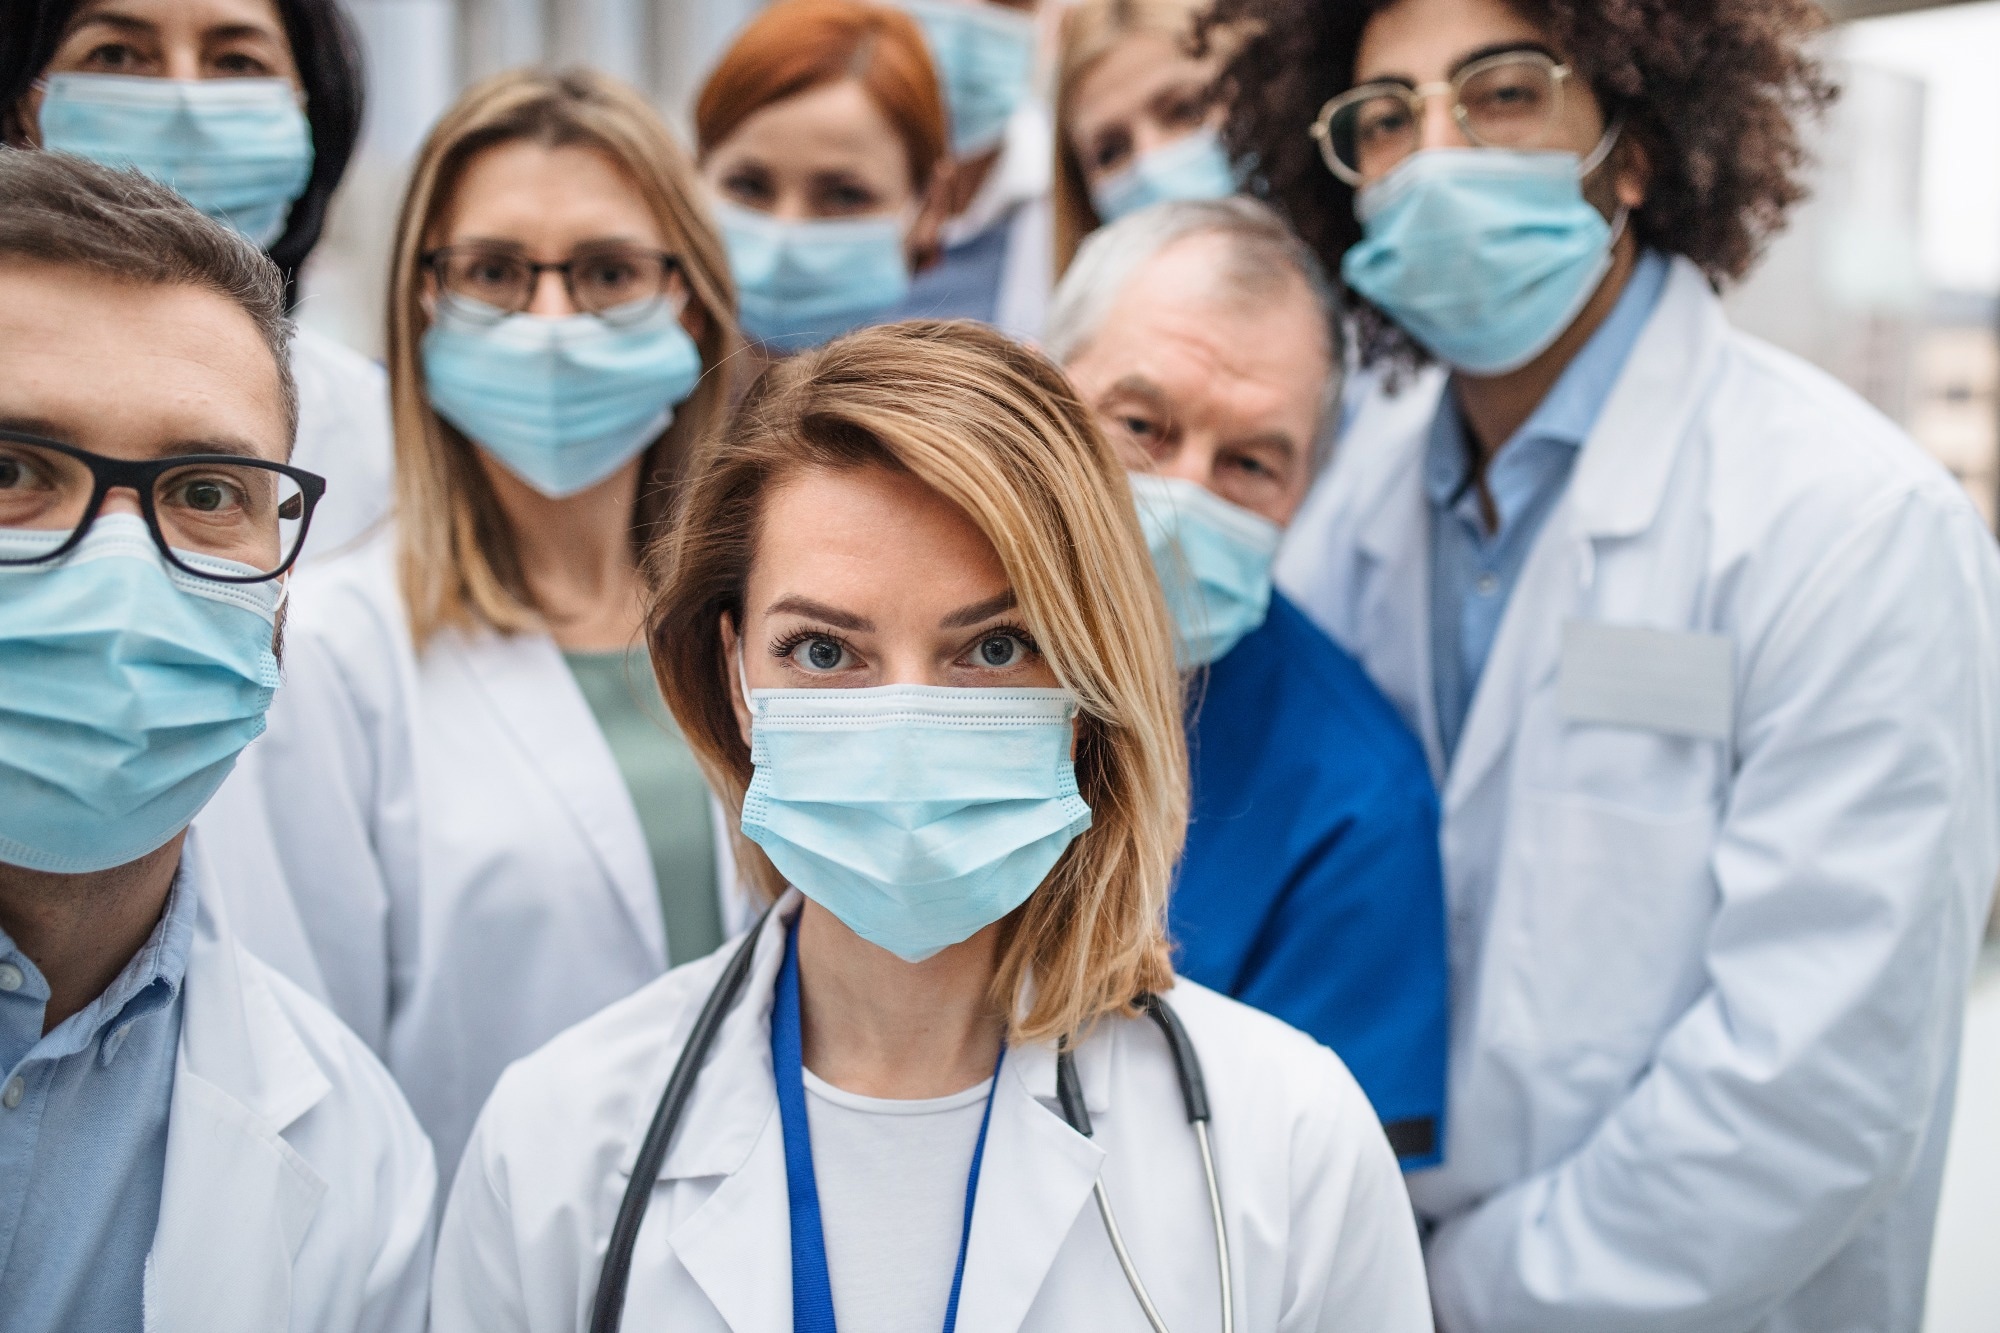 Étude : Pour la sécurité des patients, il n'est pas temps de retirer les masques dans les établissements de santé.  Crédit d'image : GroundPicture/Shutterstock.com